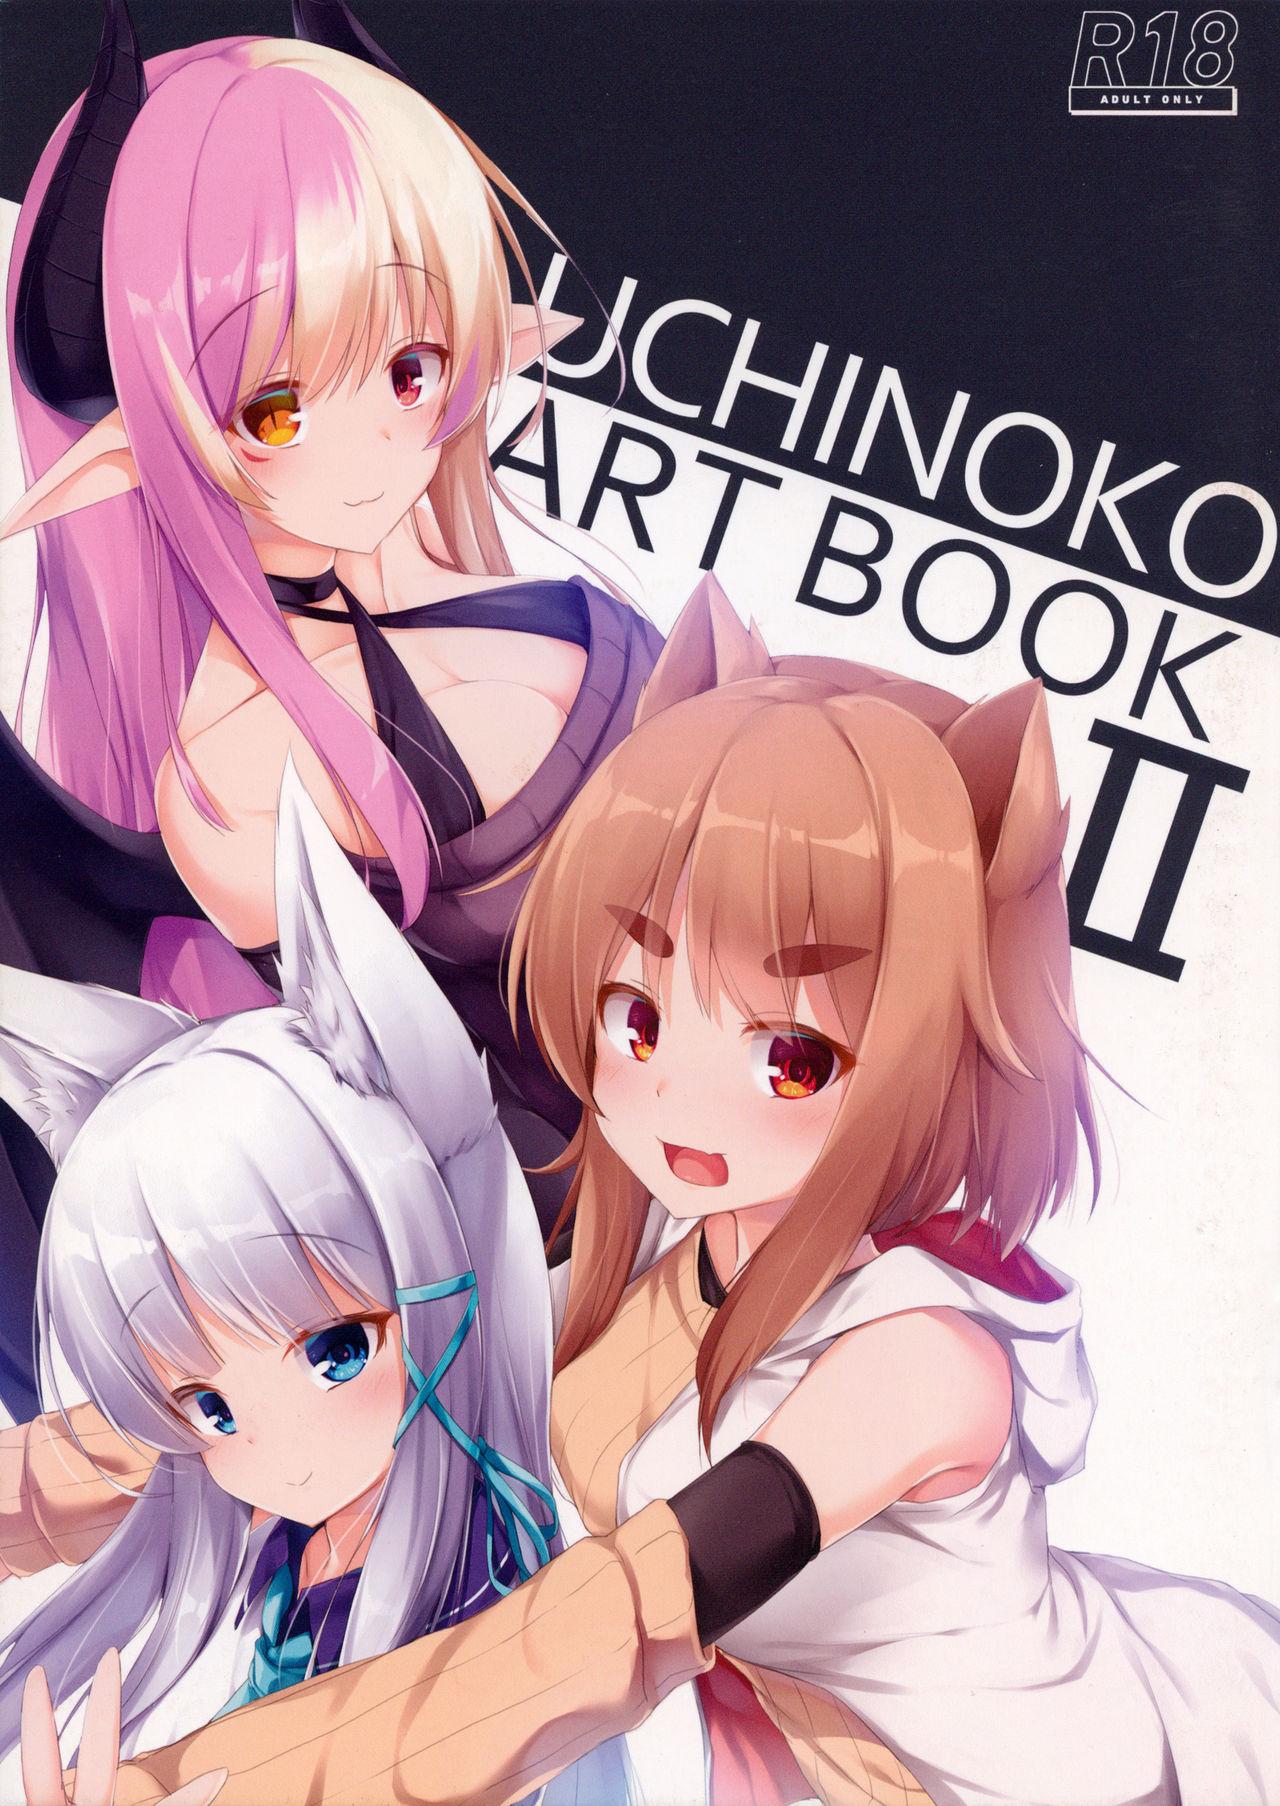 UCHINOKO ART BOOK 2 0